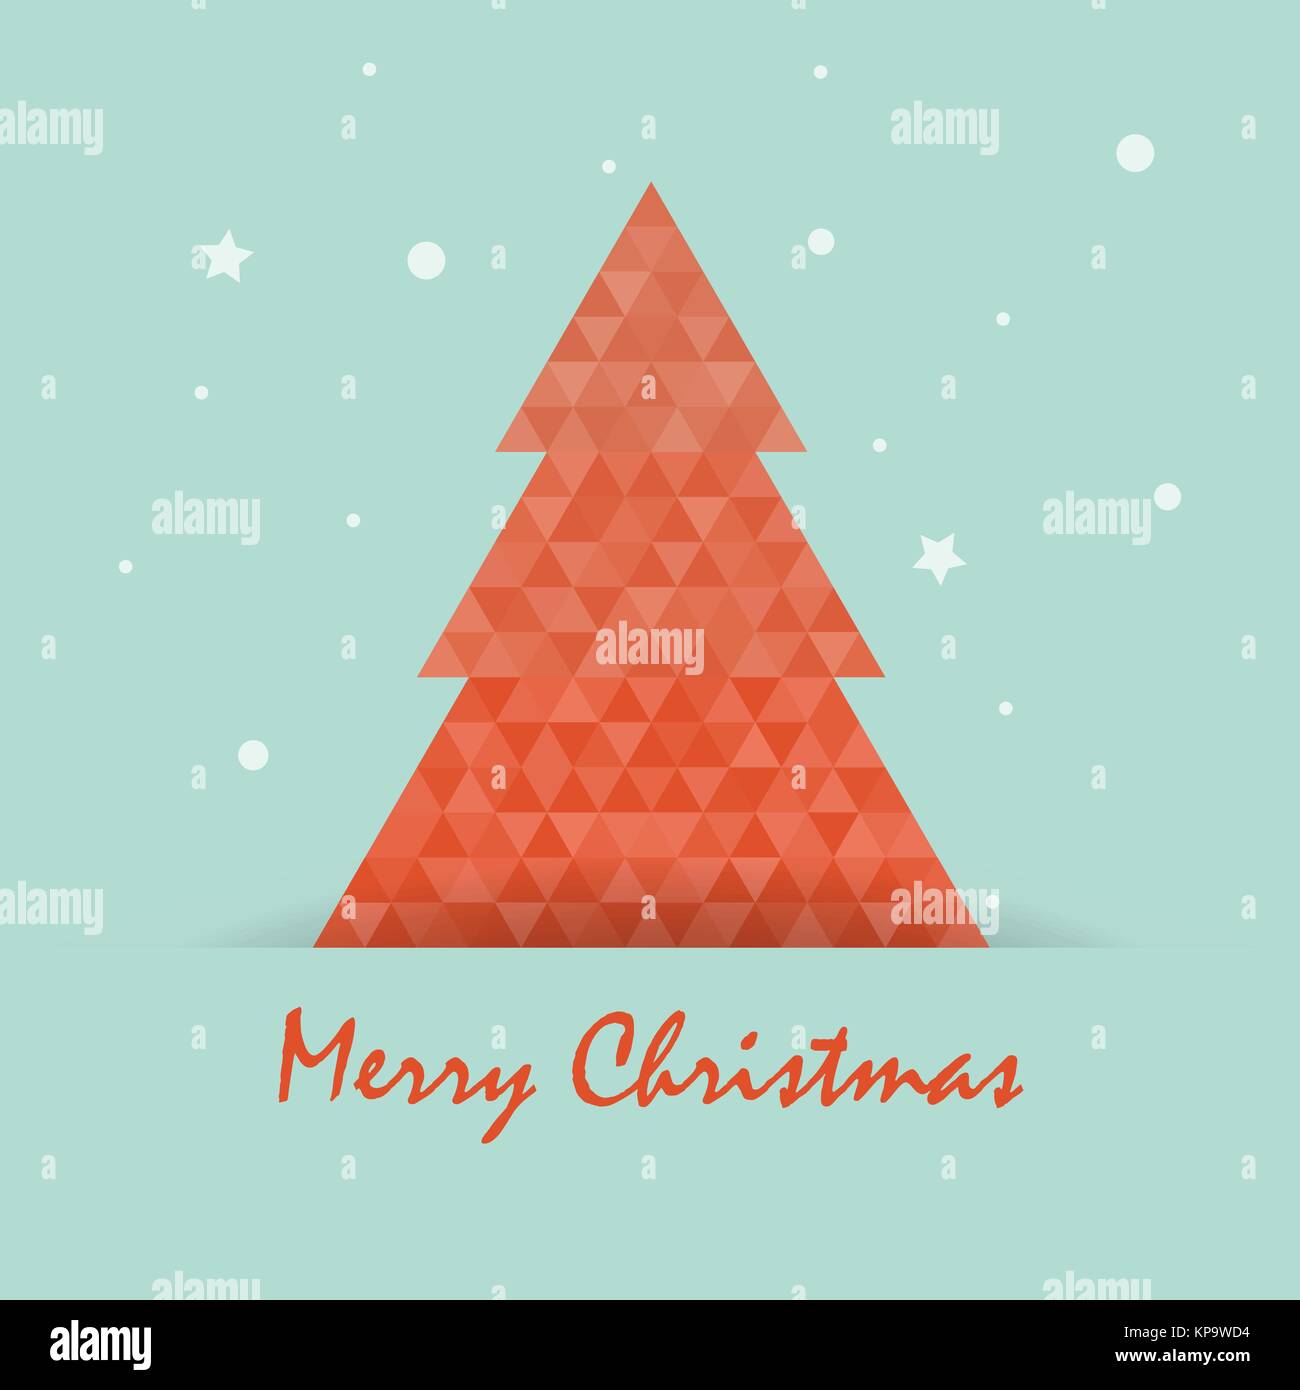 Cartolina di Natale template con albero di natale .Merry Christmas tipografici ed elementi di design. Illustrazione Vettoriale. Illustrazione Vettoriale